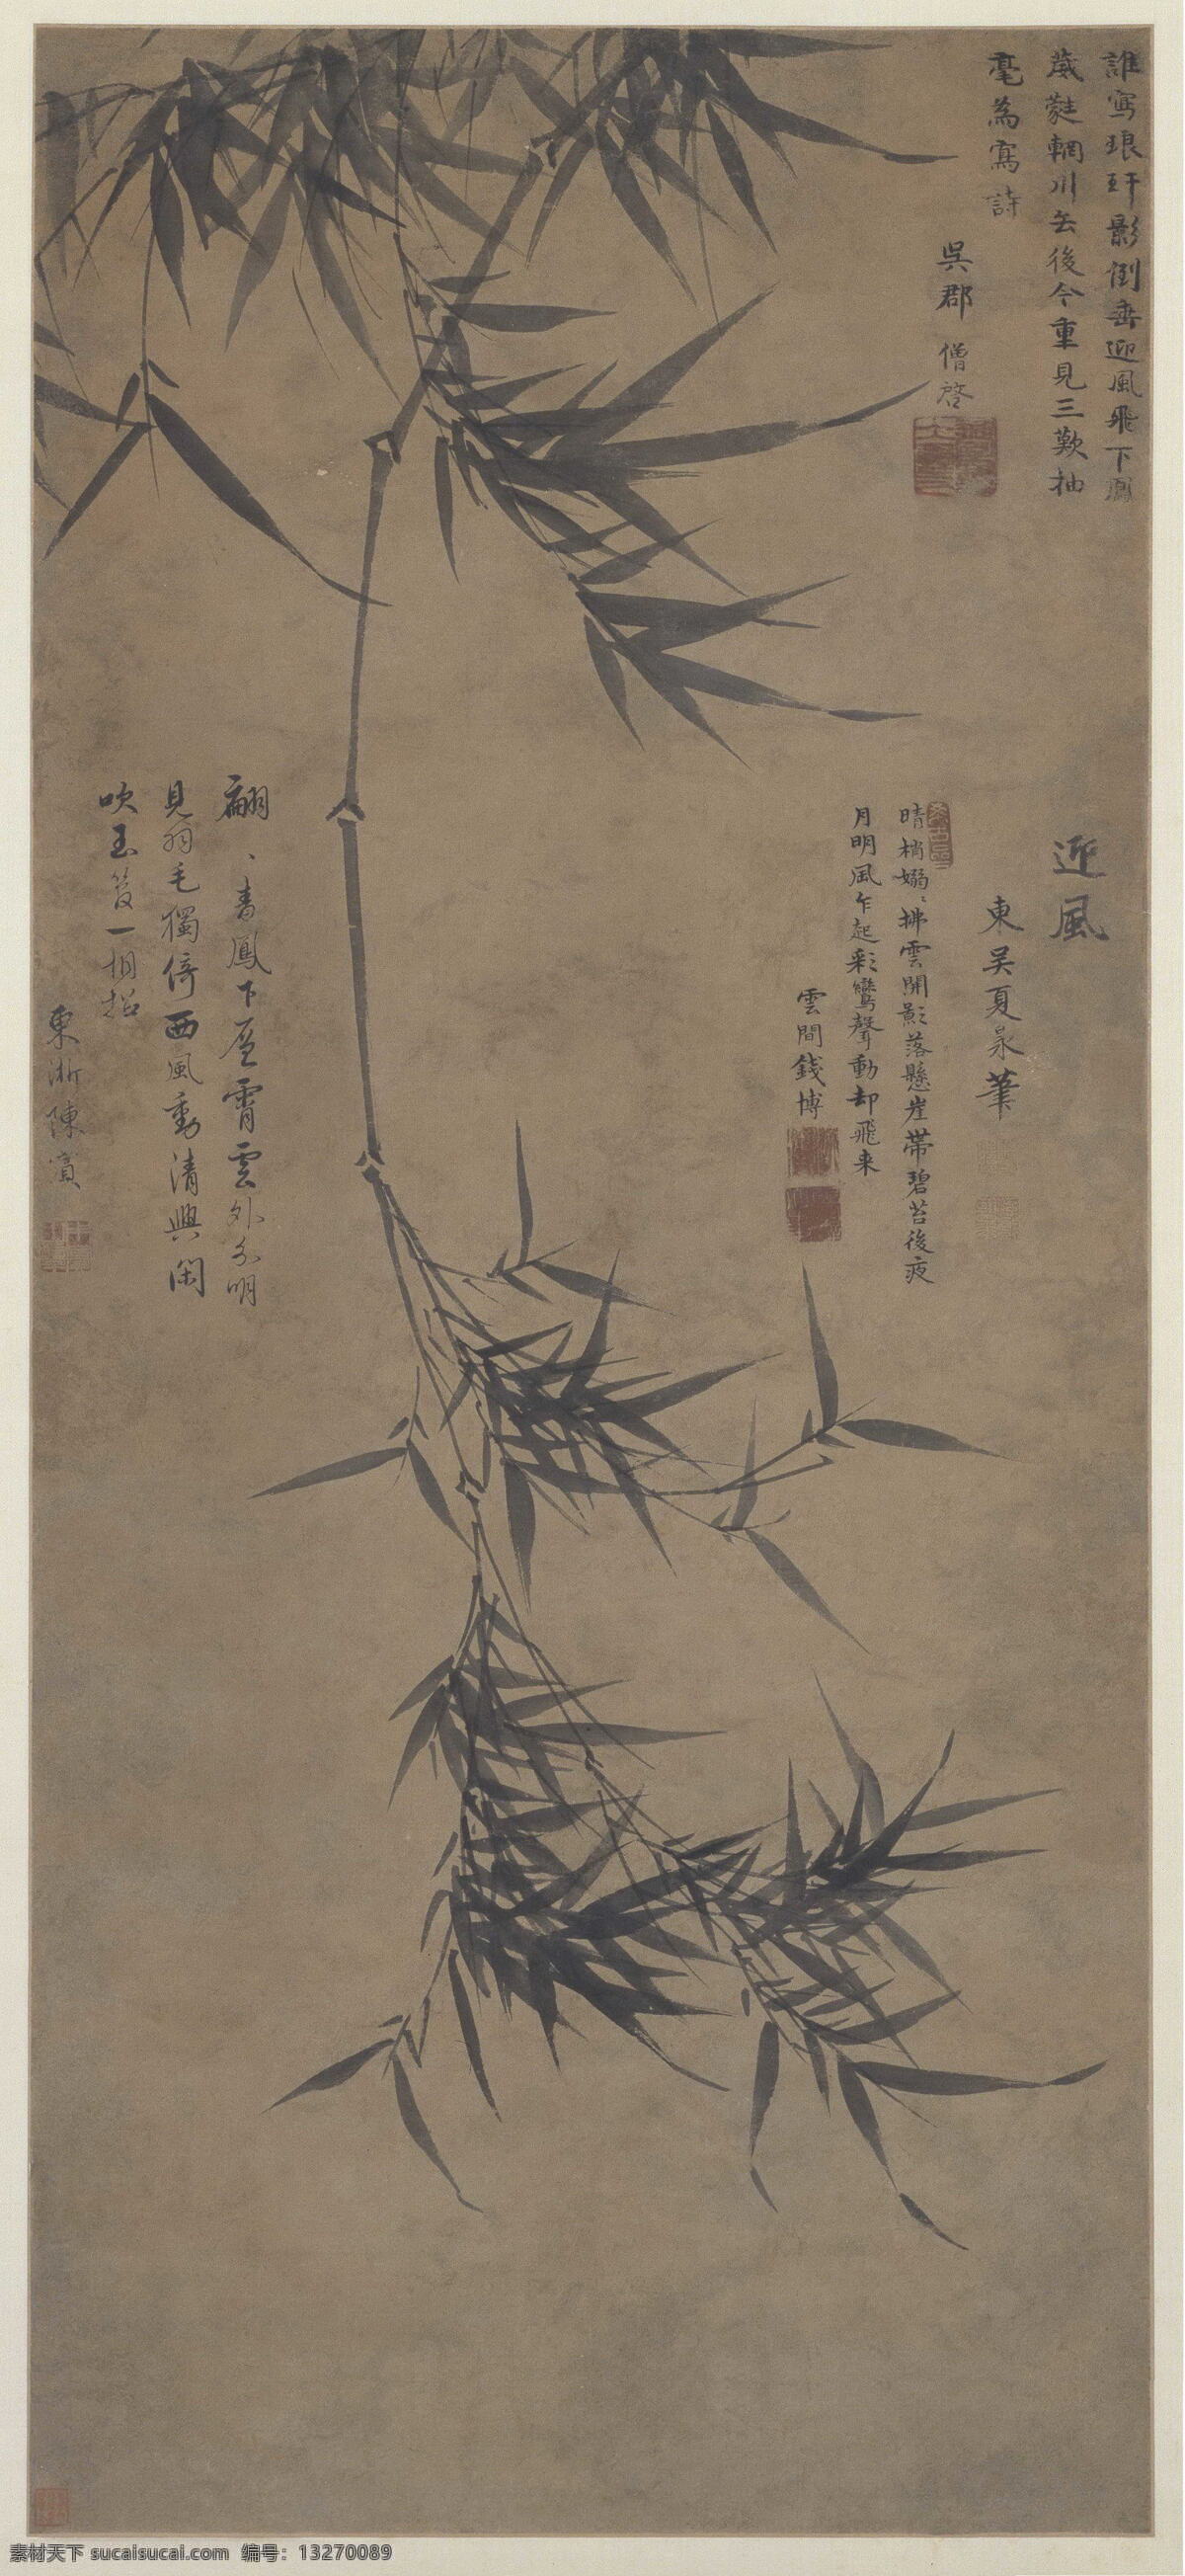 墨竹图 明 夏昶 北京故宫藏 国画 文化艺术 绘画书法